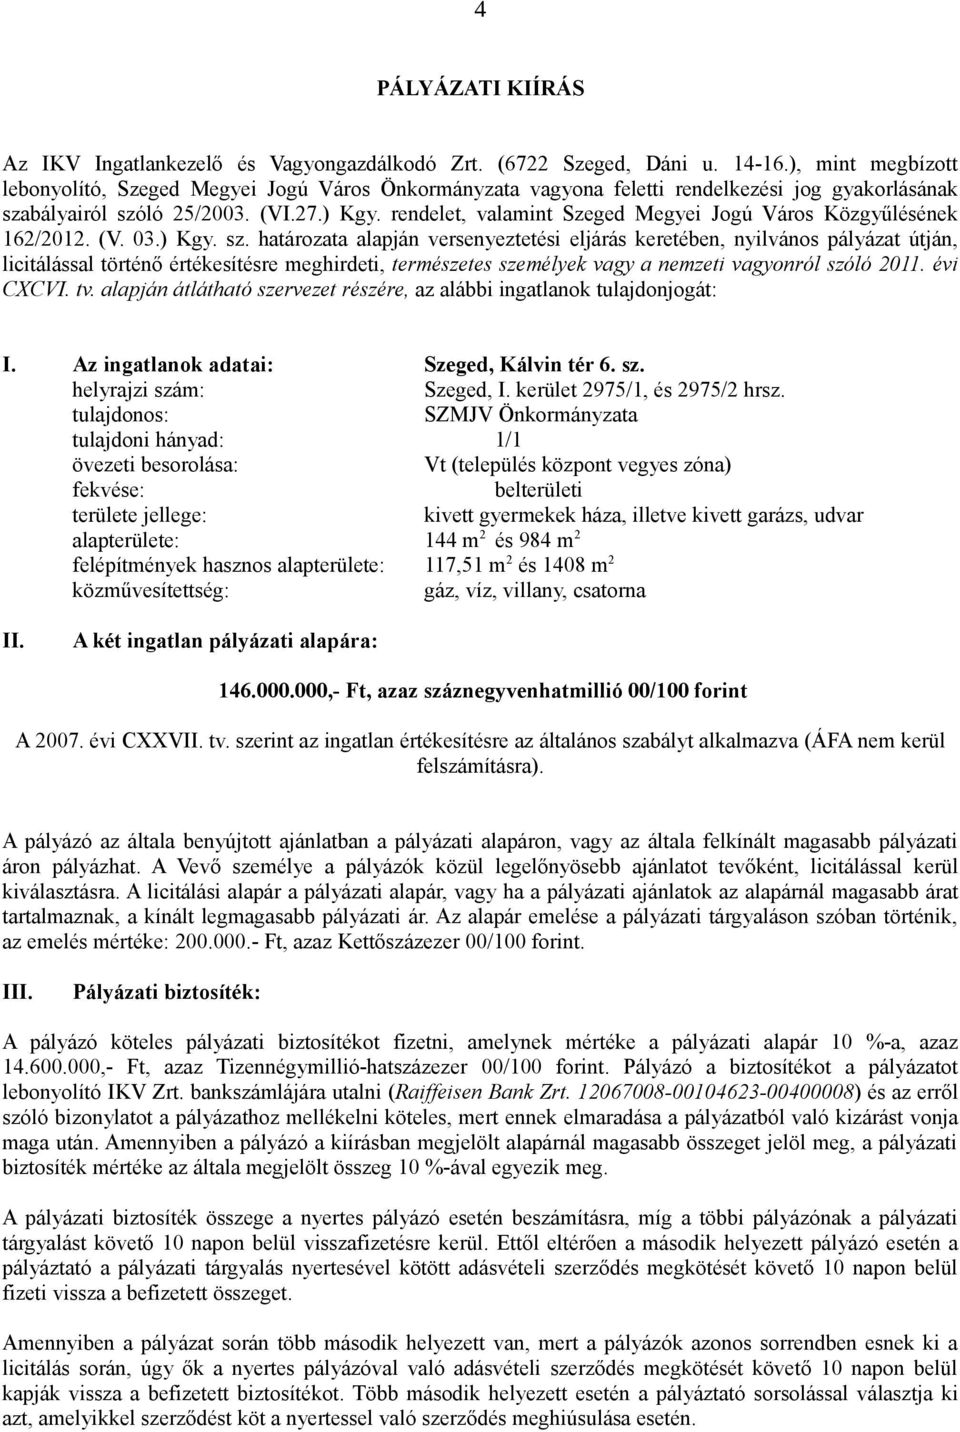 rendelet, valamint Szeged Megyei Jogú Város Közgyűlésének 162/2012. (V. 03.) Kgy. sz.